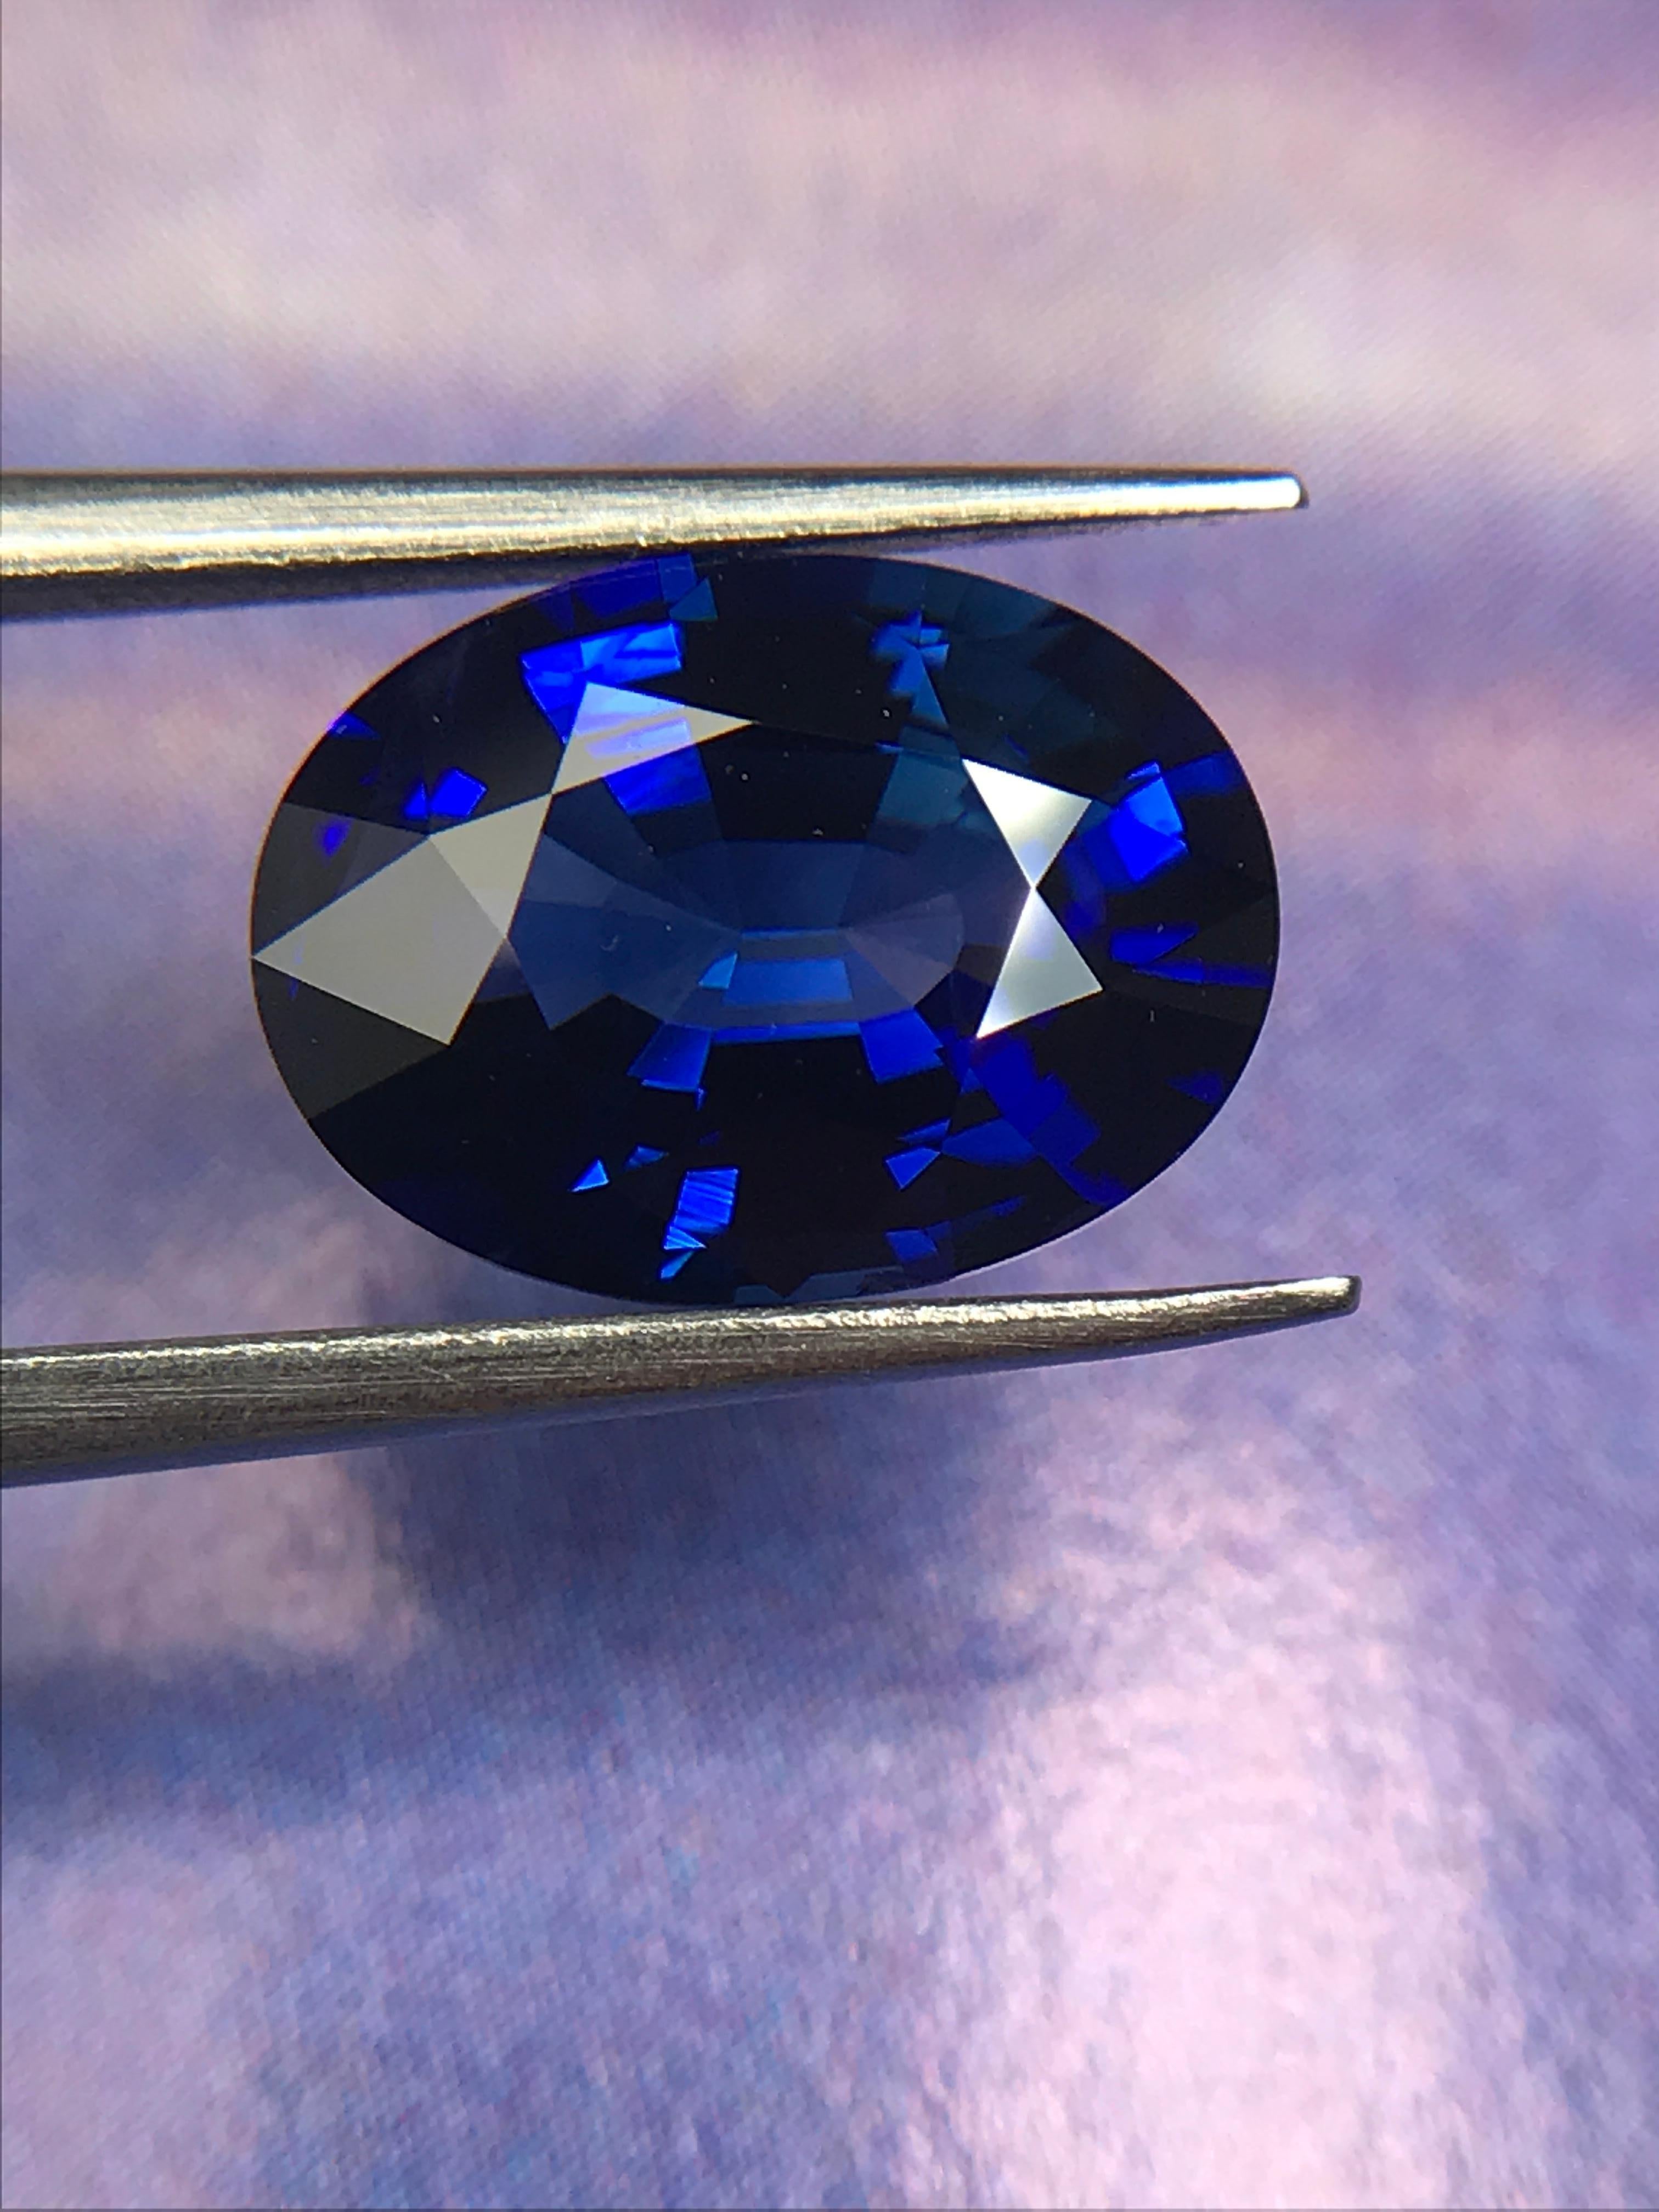 Éblouissant saphir ovale naturel de 3,80 carats d'une riche couleur bleu royal, parfait pour un bijou intemporel. 

Nous sommes spécialisés dans les pierres précieuses de couleur et offrons un service de bijouterie sur mesure. Le délai de production